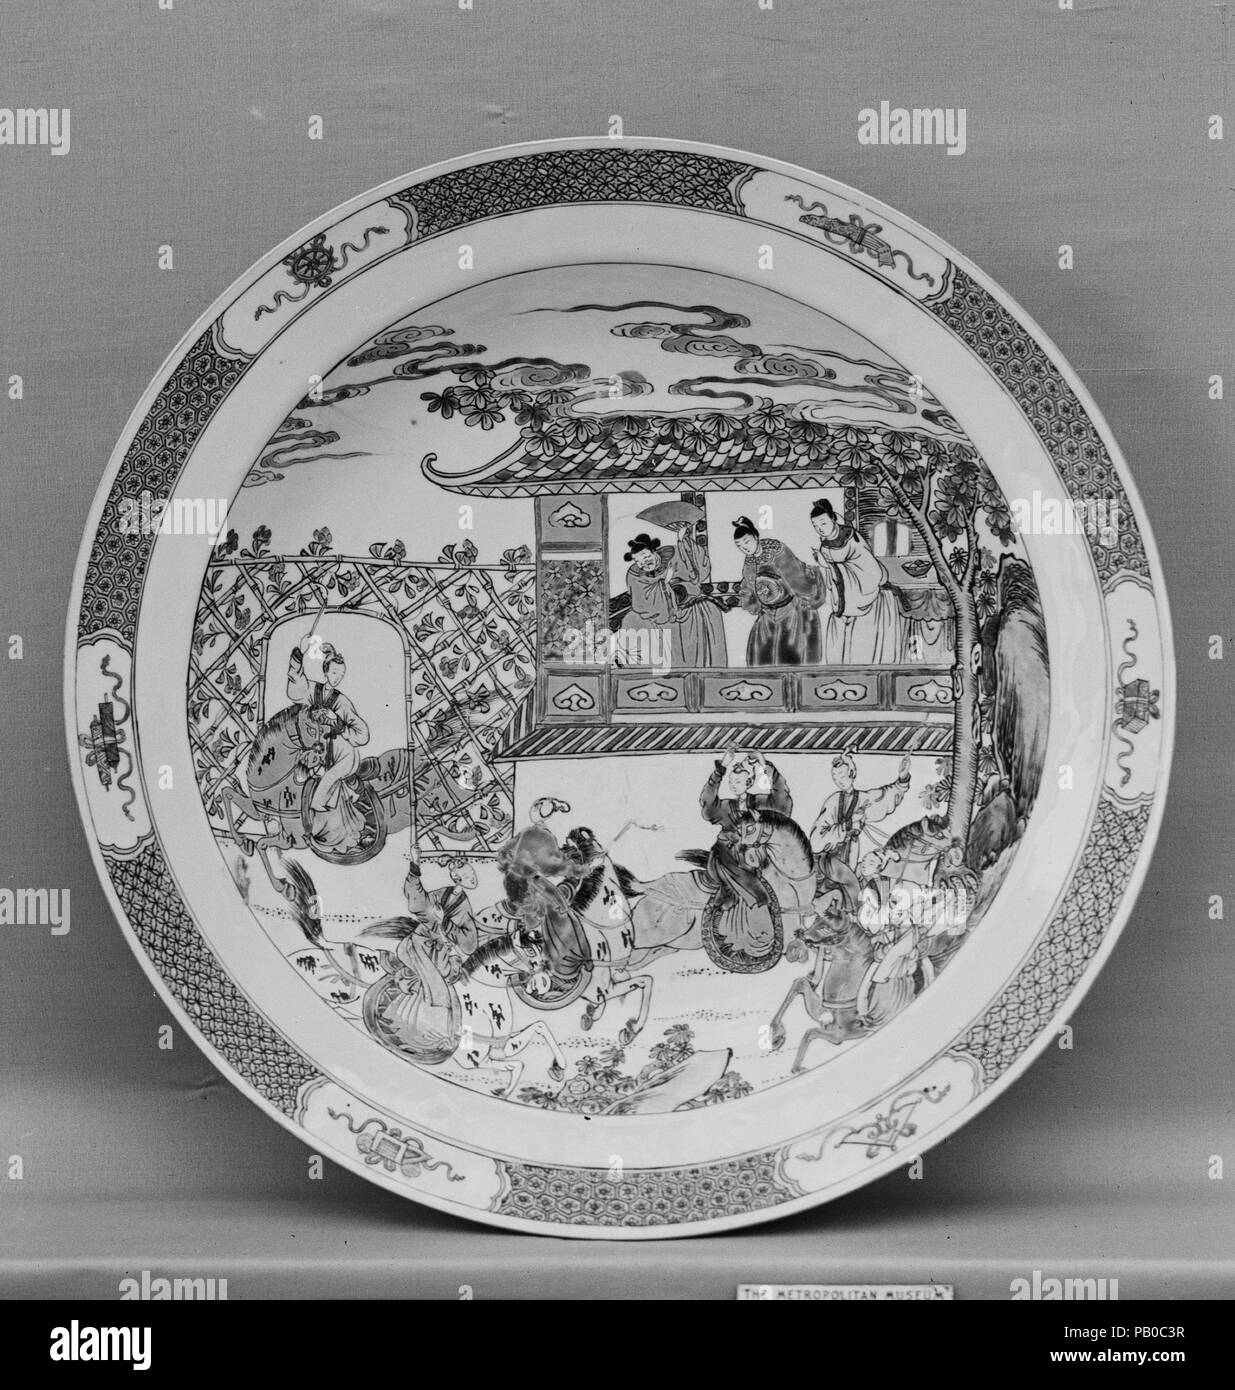 La plaque. Culture : la Chine. Dimensions : diam. 13 1/2 in. (34,3 cm). Date : fin 18e-19e siècle. Musée : Metropolitan Museum of Art, New York, USA. Banque D'Images